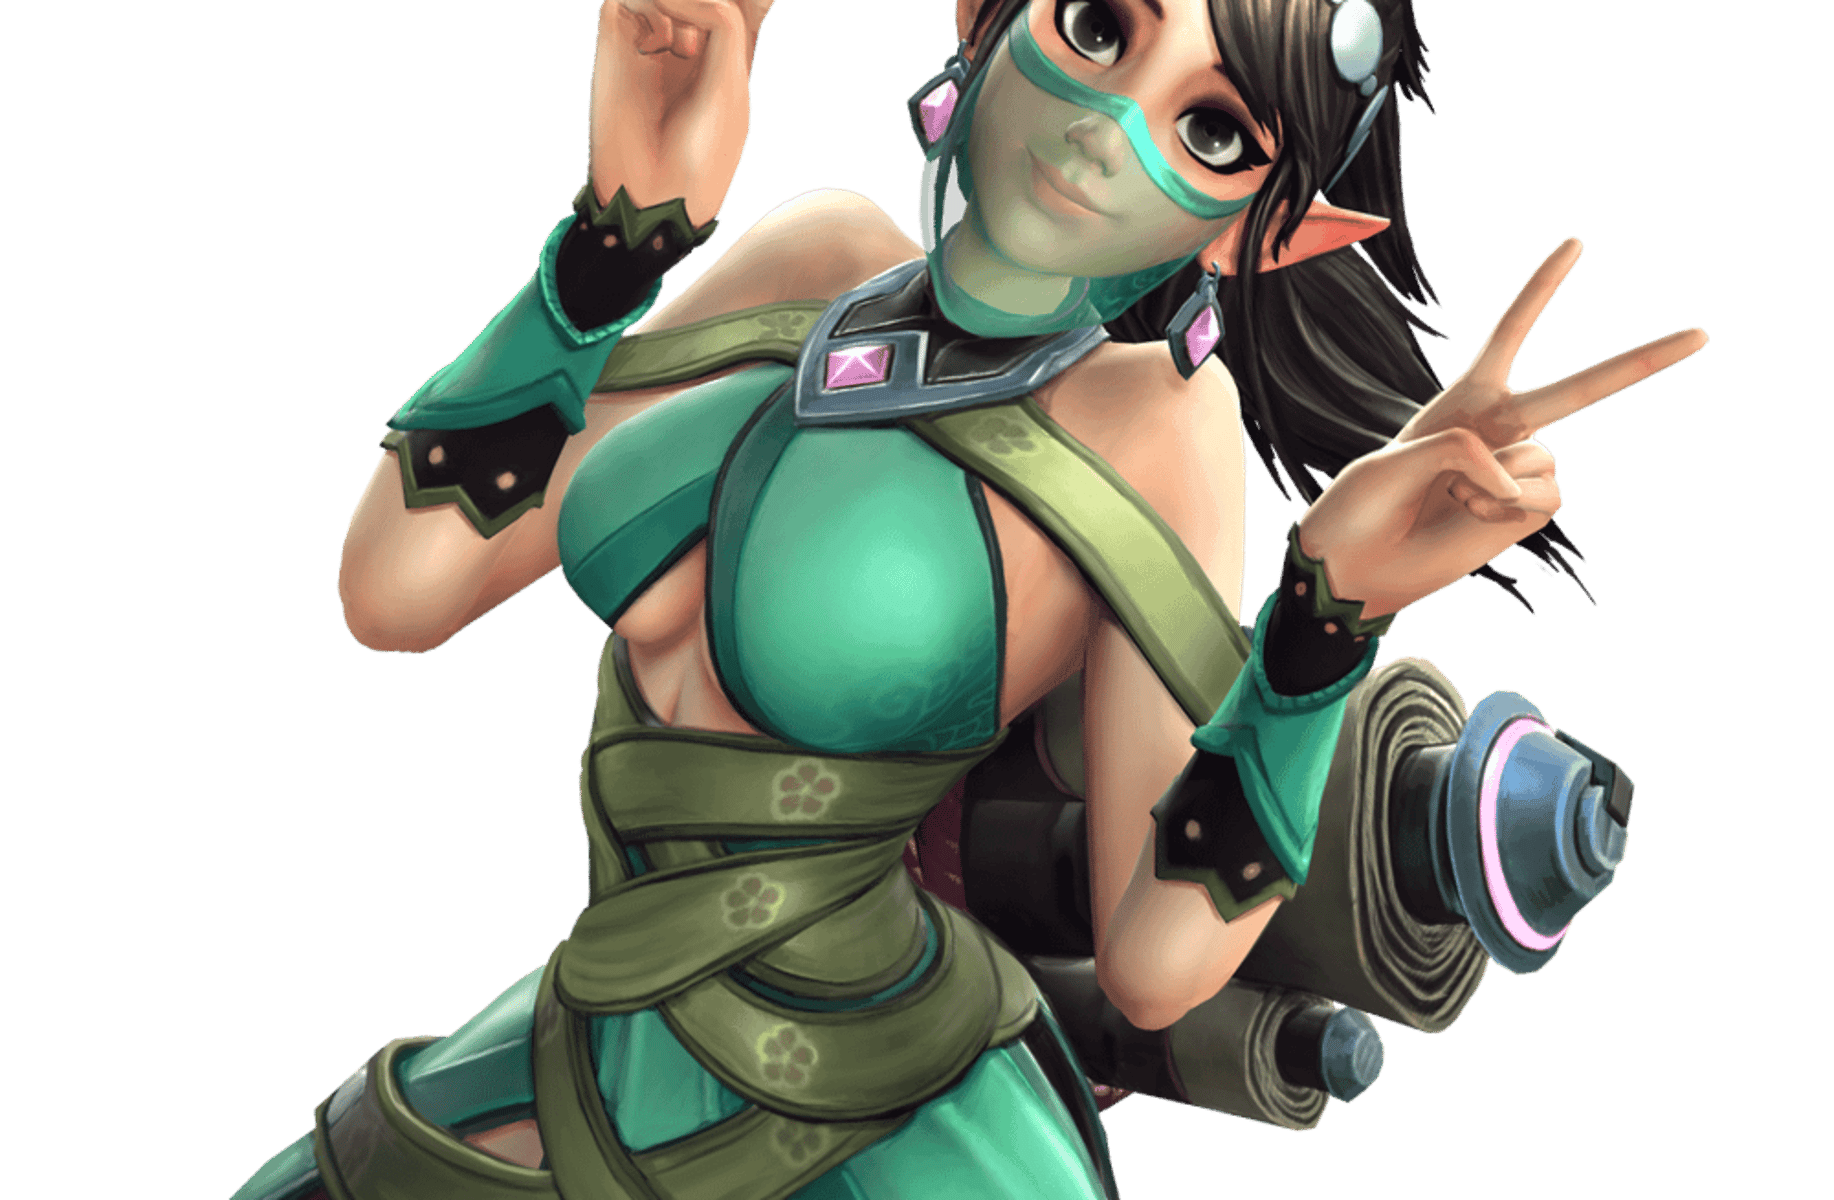 Ying